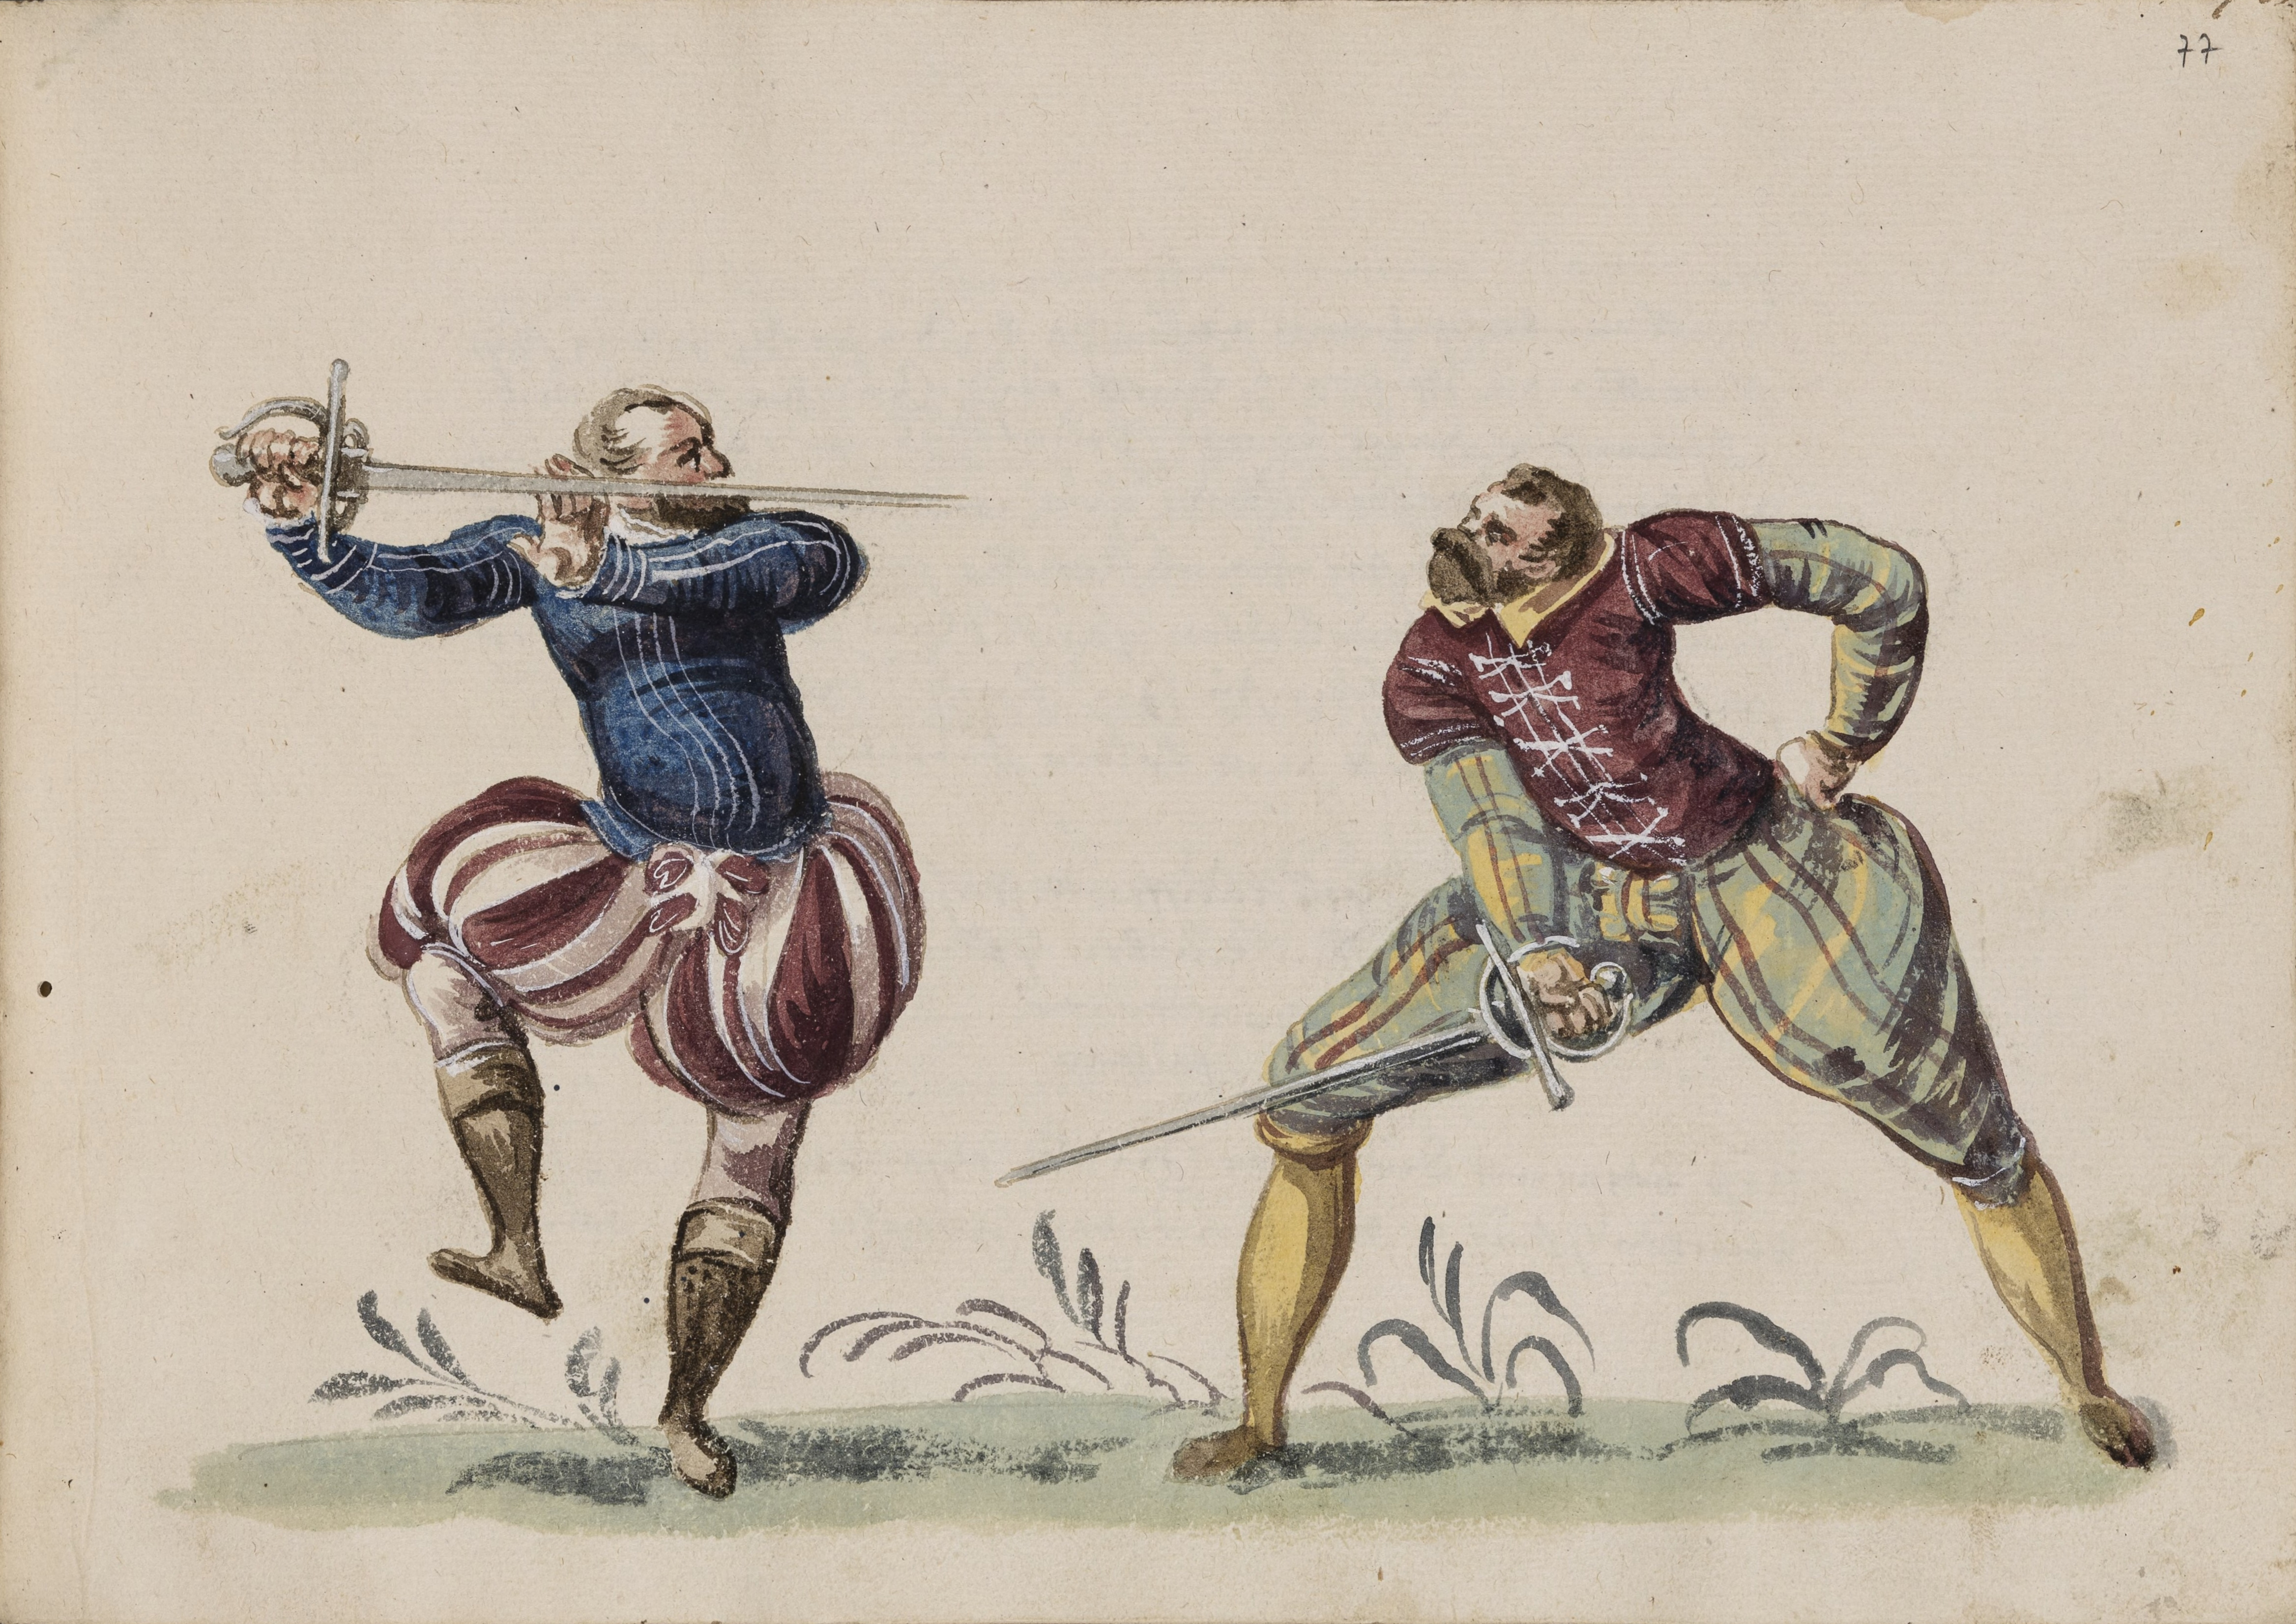 Рапира фехтование в средневековье